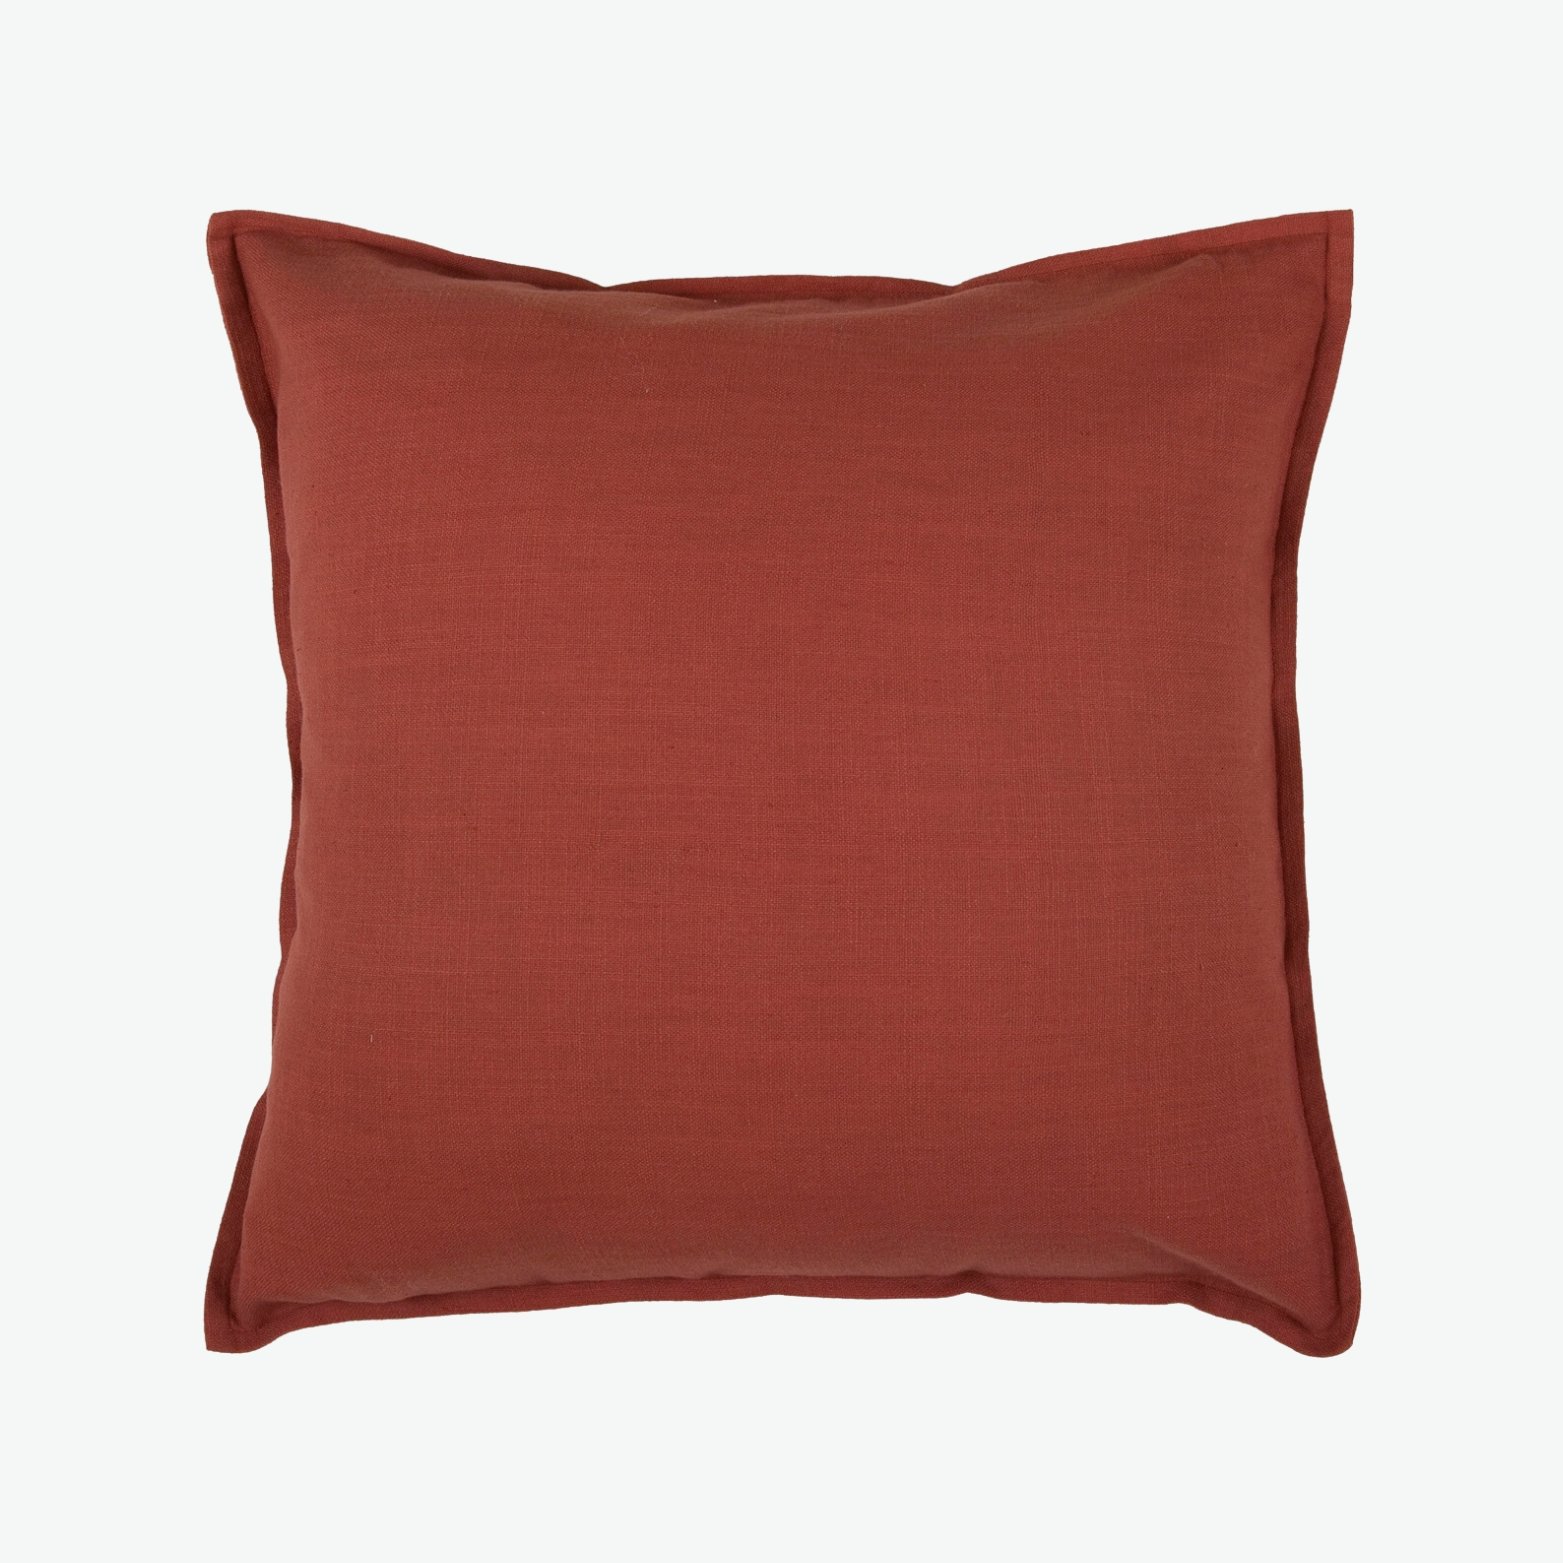 Auburn Red Throw Pillow.jpg